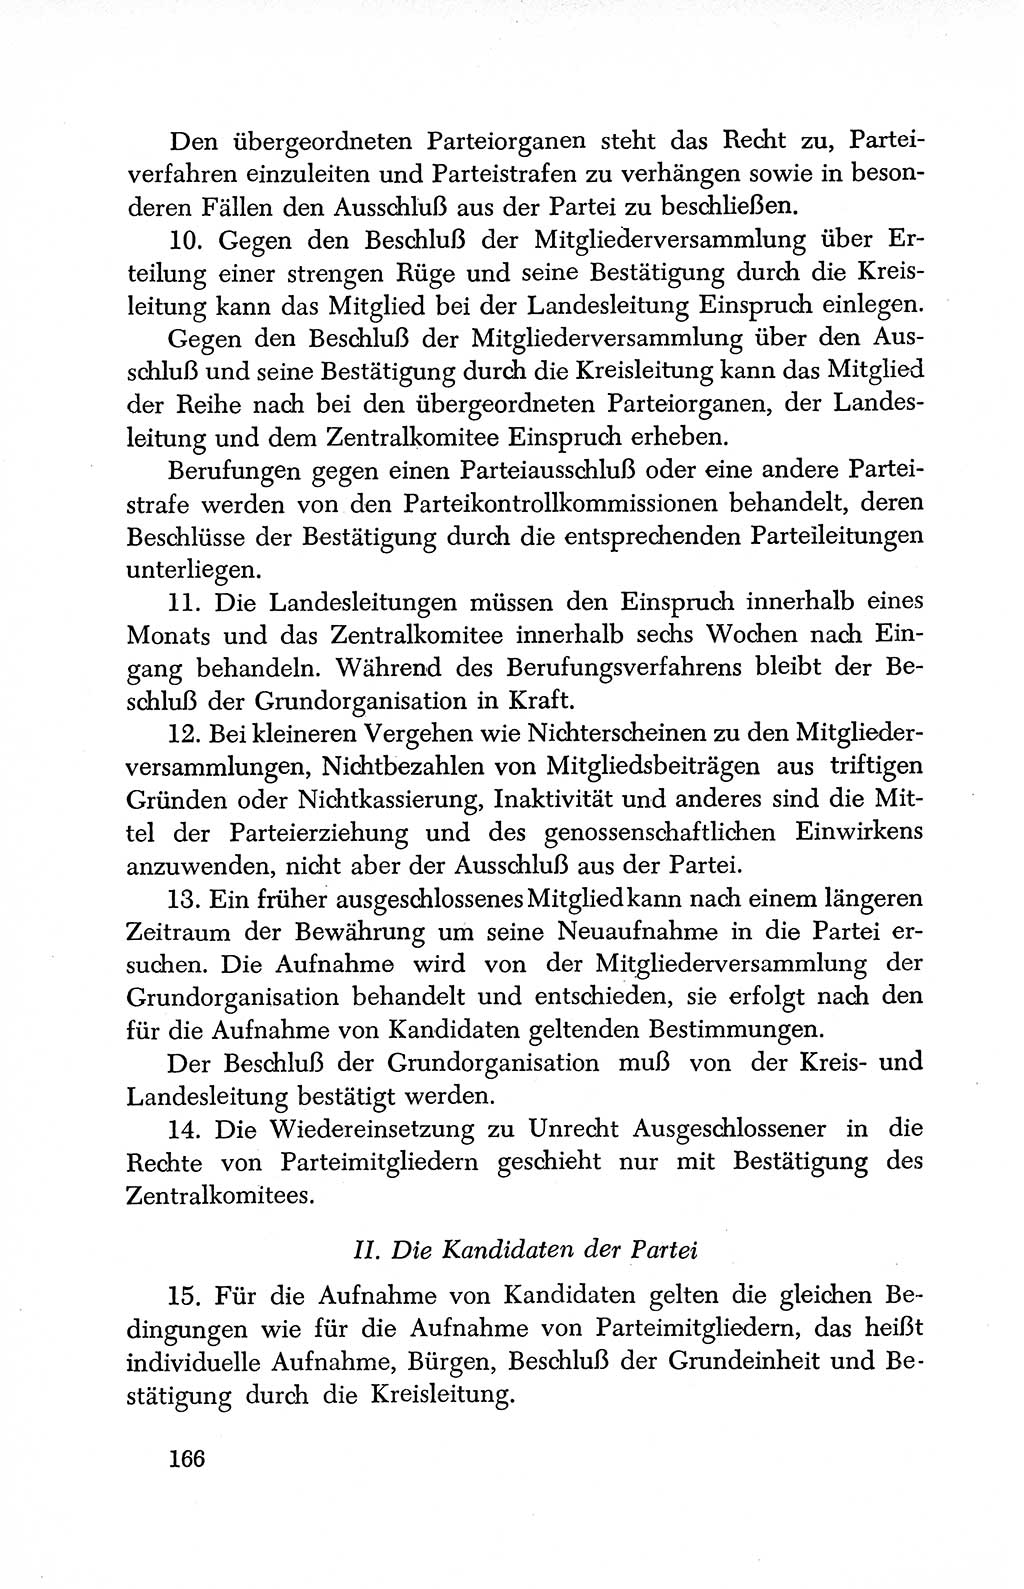 Dokumente der Sozialistischen Einheitspartei Deutschlands (SED) [Deutsche Demokratische Republik (DDR)] 1950-1952, Seite 166 (Dok. SED DDR 1950-1952, S. 166)